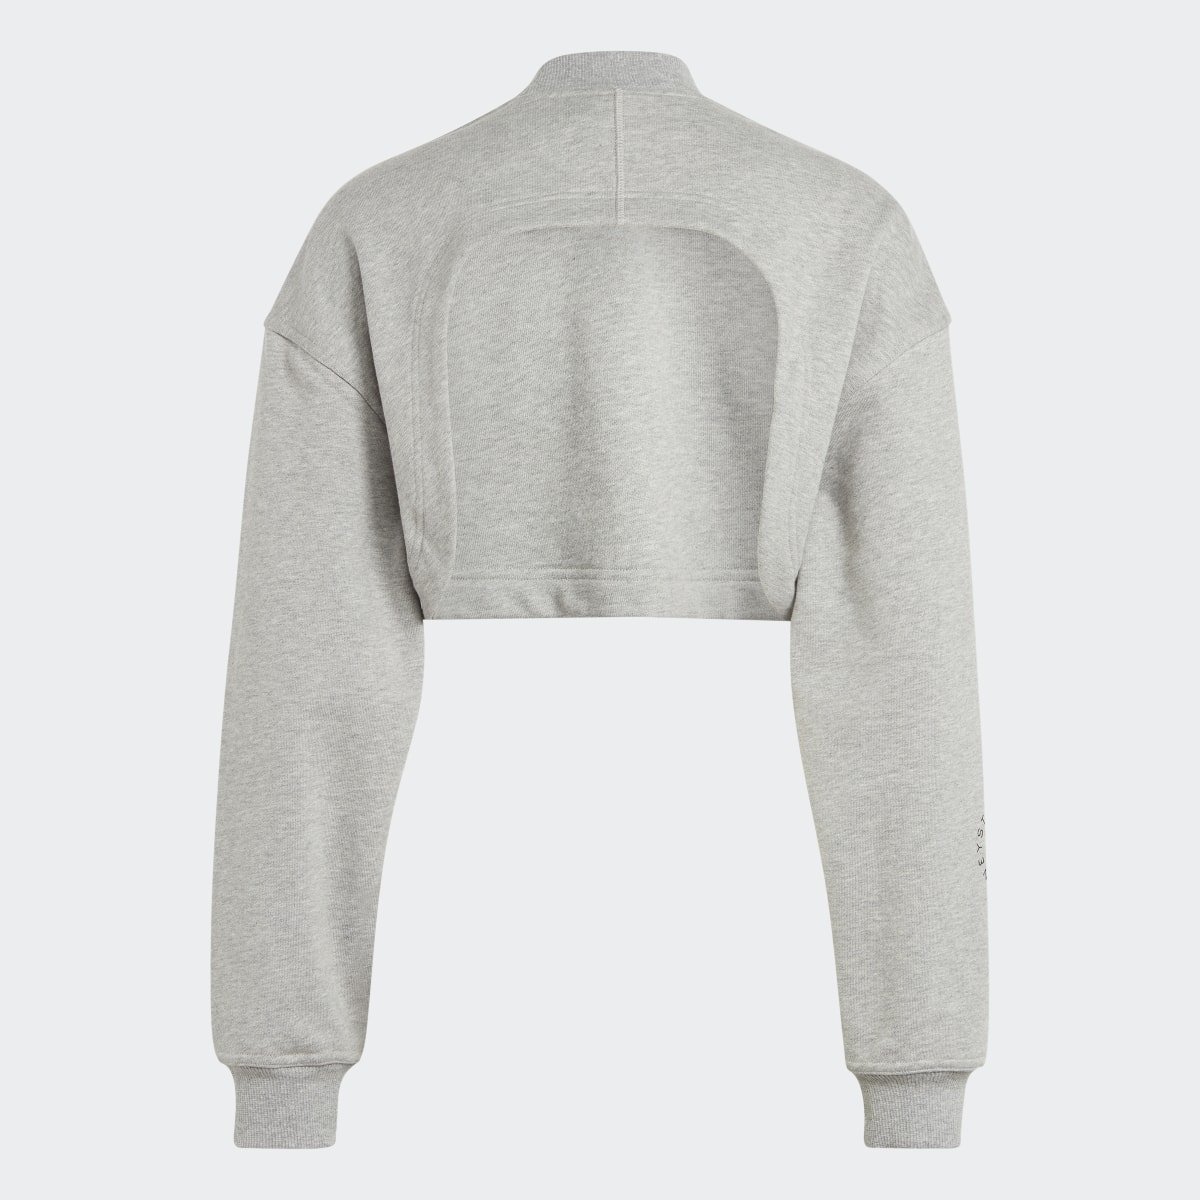 Adidas by Stella McCartney TrueCasuals Cropped Sportswear Sweatshirt. 6